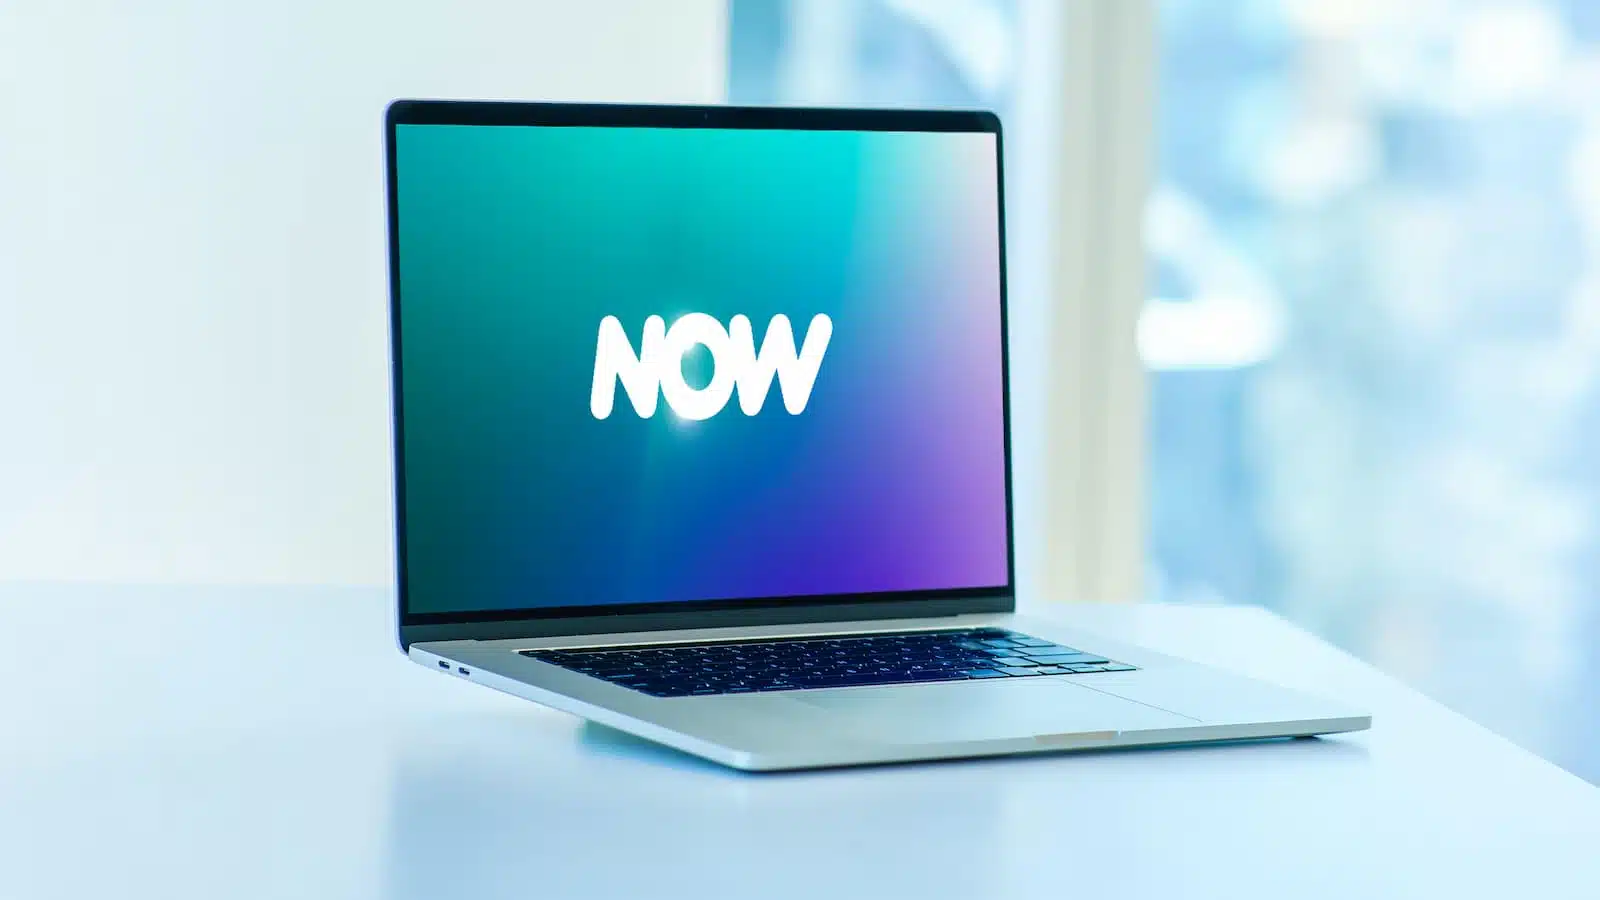 Laptop op bureau met de tekst "NOW"